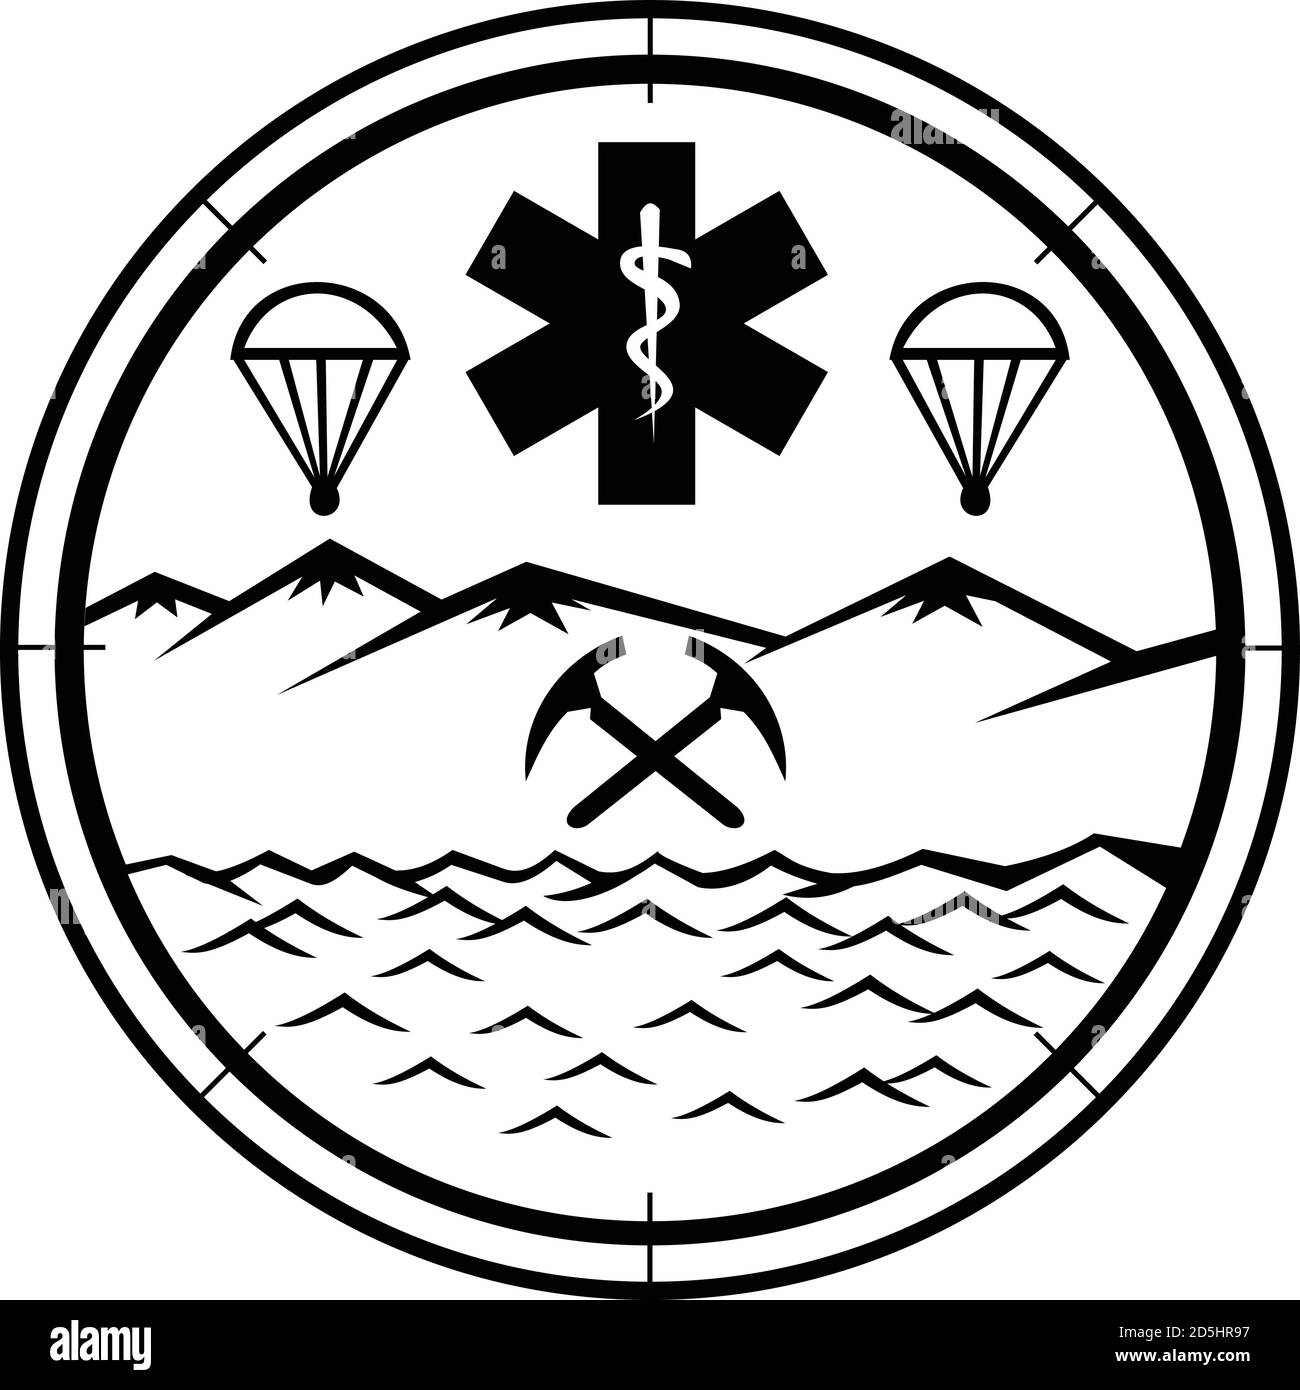 Mascotte icône illustration de la terre, mer et sauvetage aérien montrant étoile de la vie symbole EMT avec la tige d'Asclepius au centre avec des axes de sélection croisés, para Illustration de Vecteur